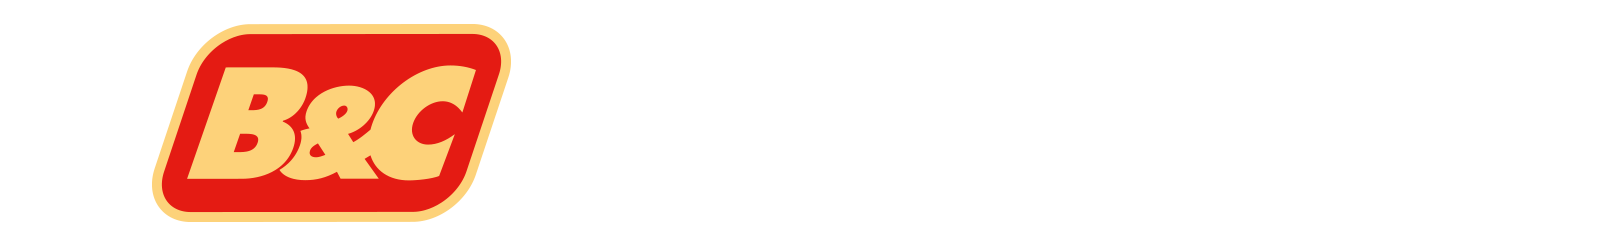 B&C Food - Export